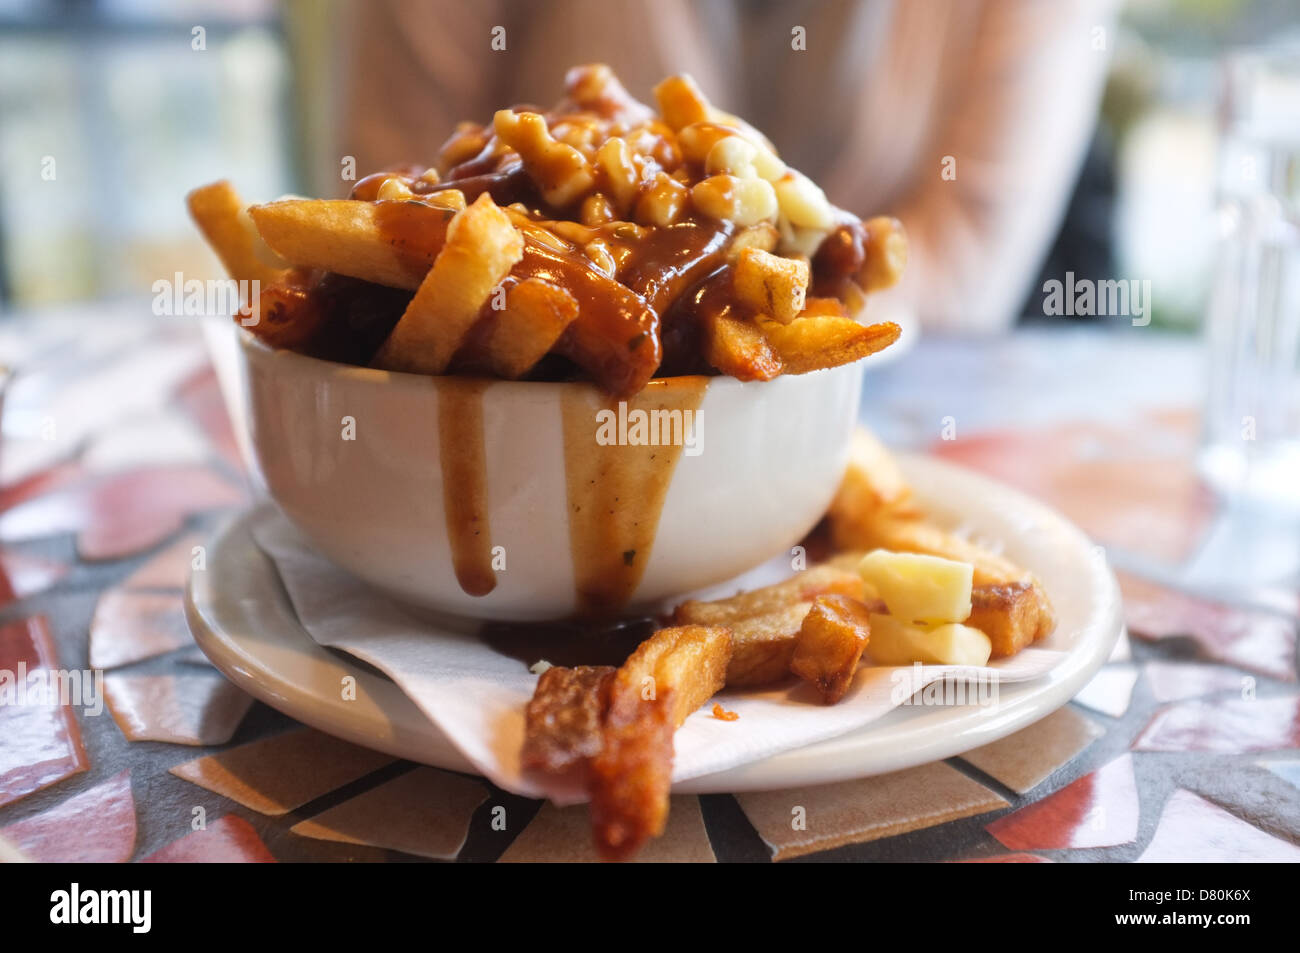 Poutine Ist Ein Fast Food Gericht Die Ihren Ursprung In Quebec Und Finden Sie Jetzt In Ganz Kanada Stockfotografie Alamy